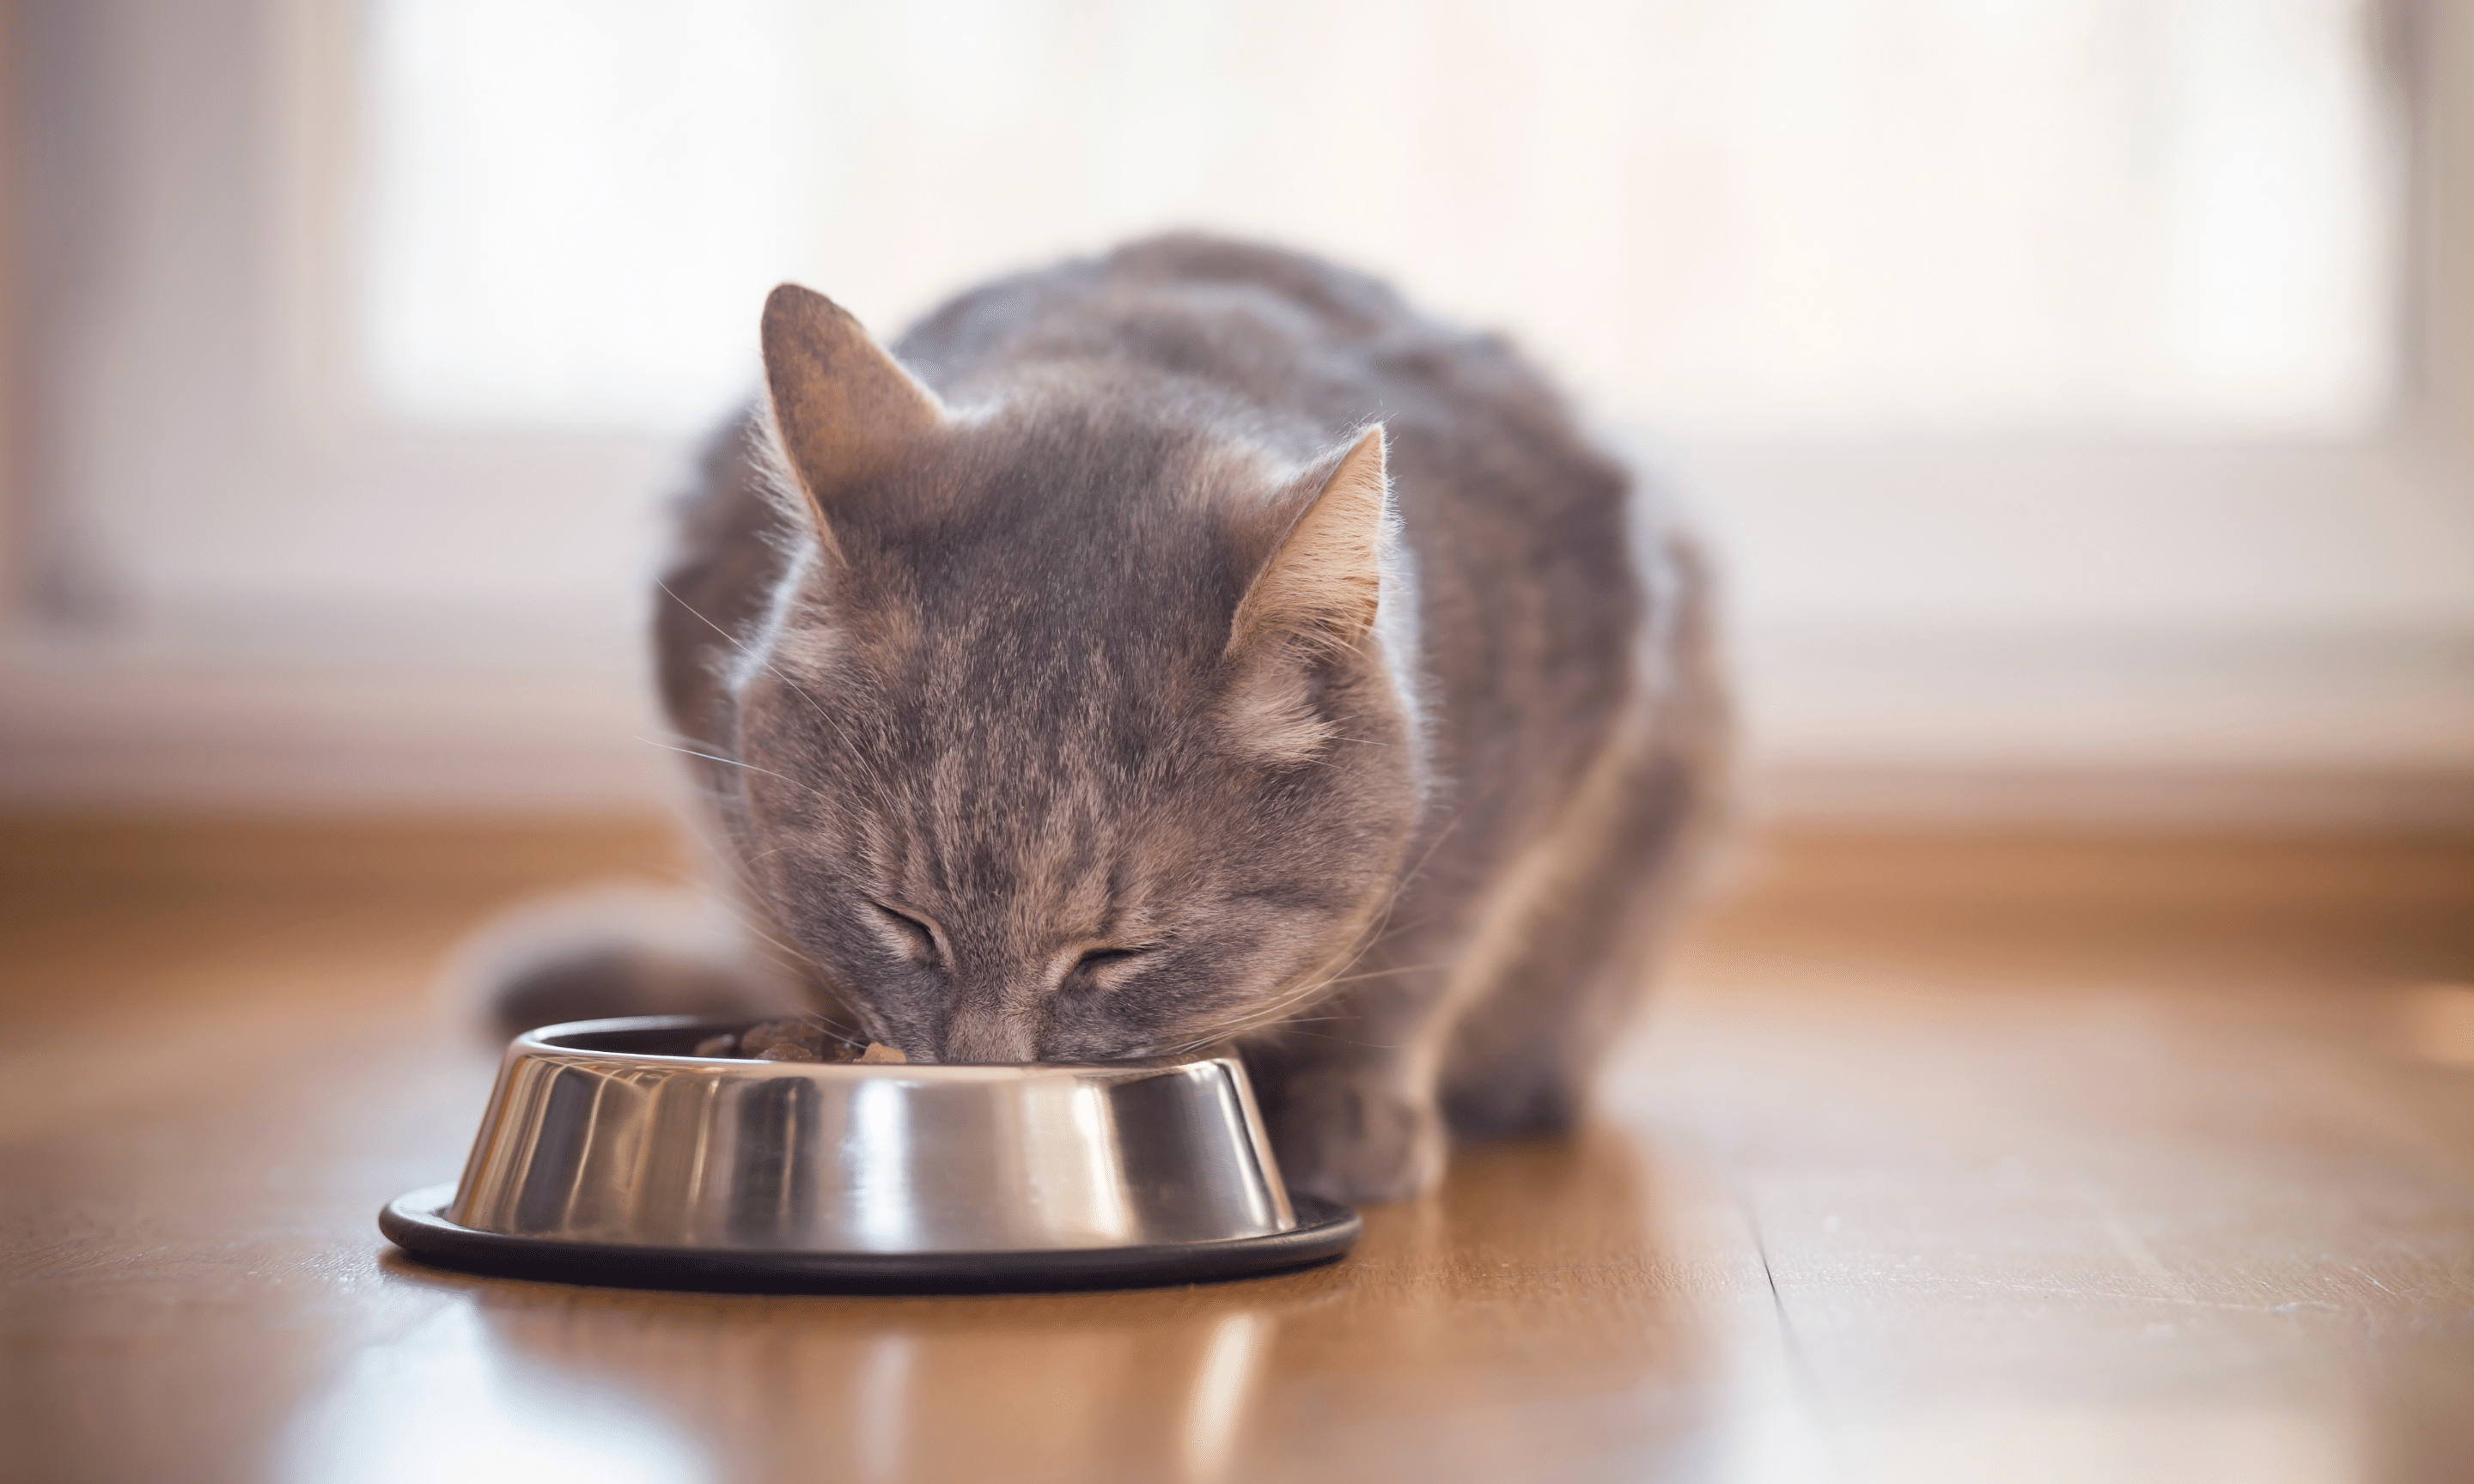 Kedinizi Besleme Konusunda Bilmeniz Gerekenler